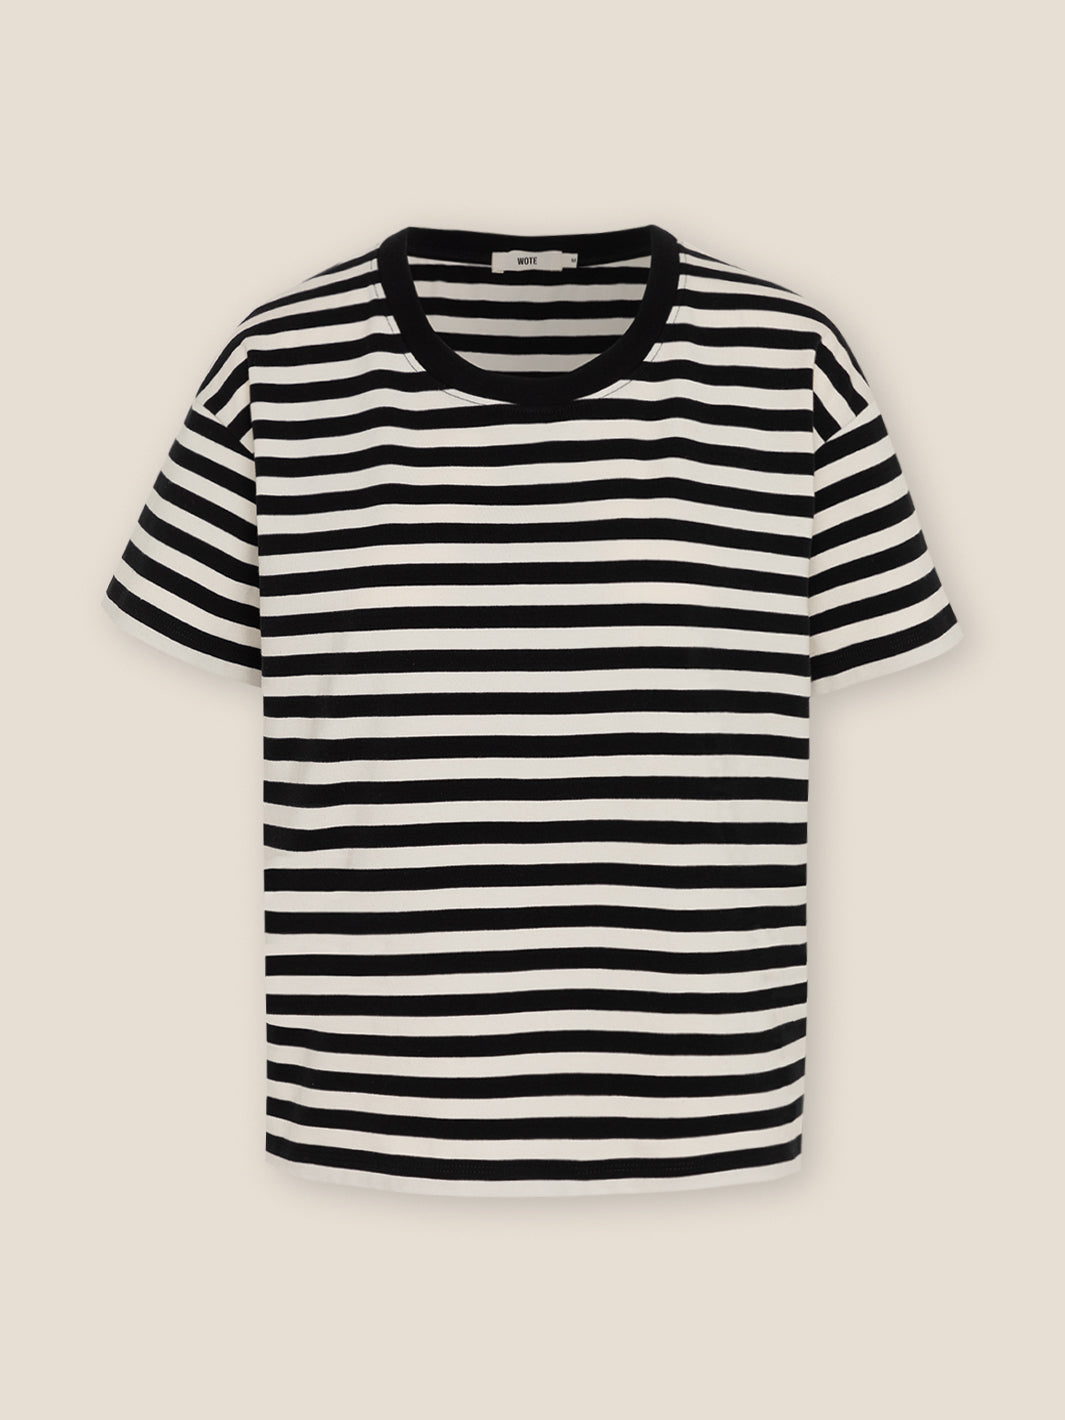 Damen Rundhals T-Shirt schwarz - off white gestreift 100% organic Cotton made in Portugal